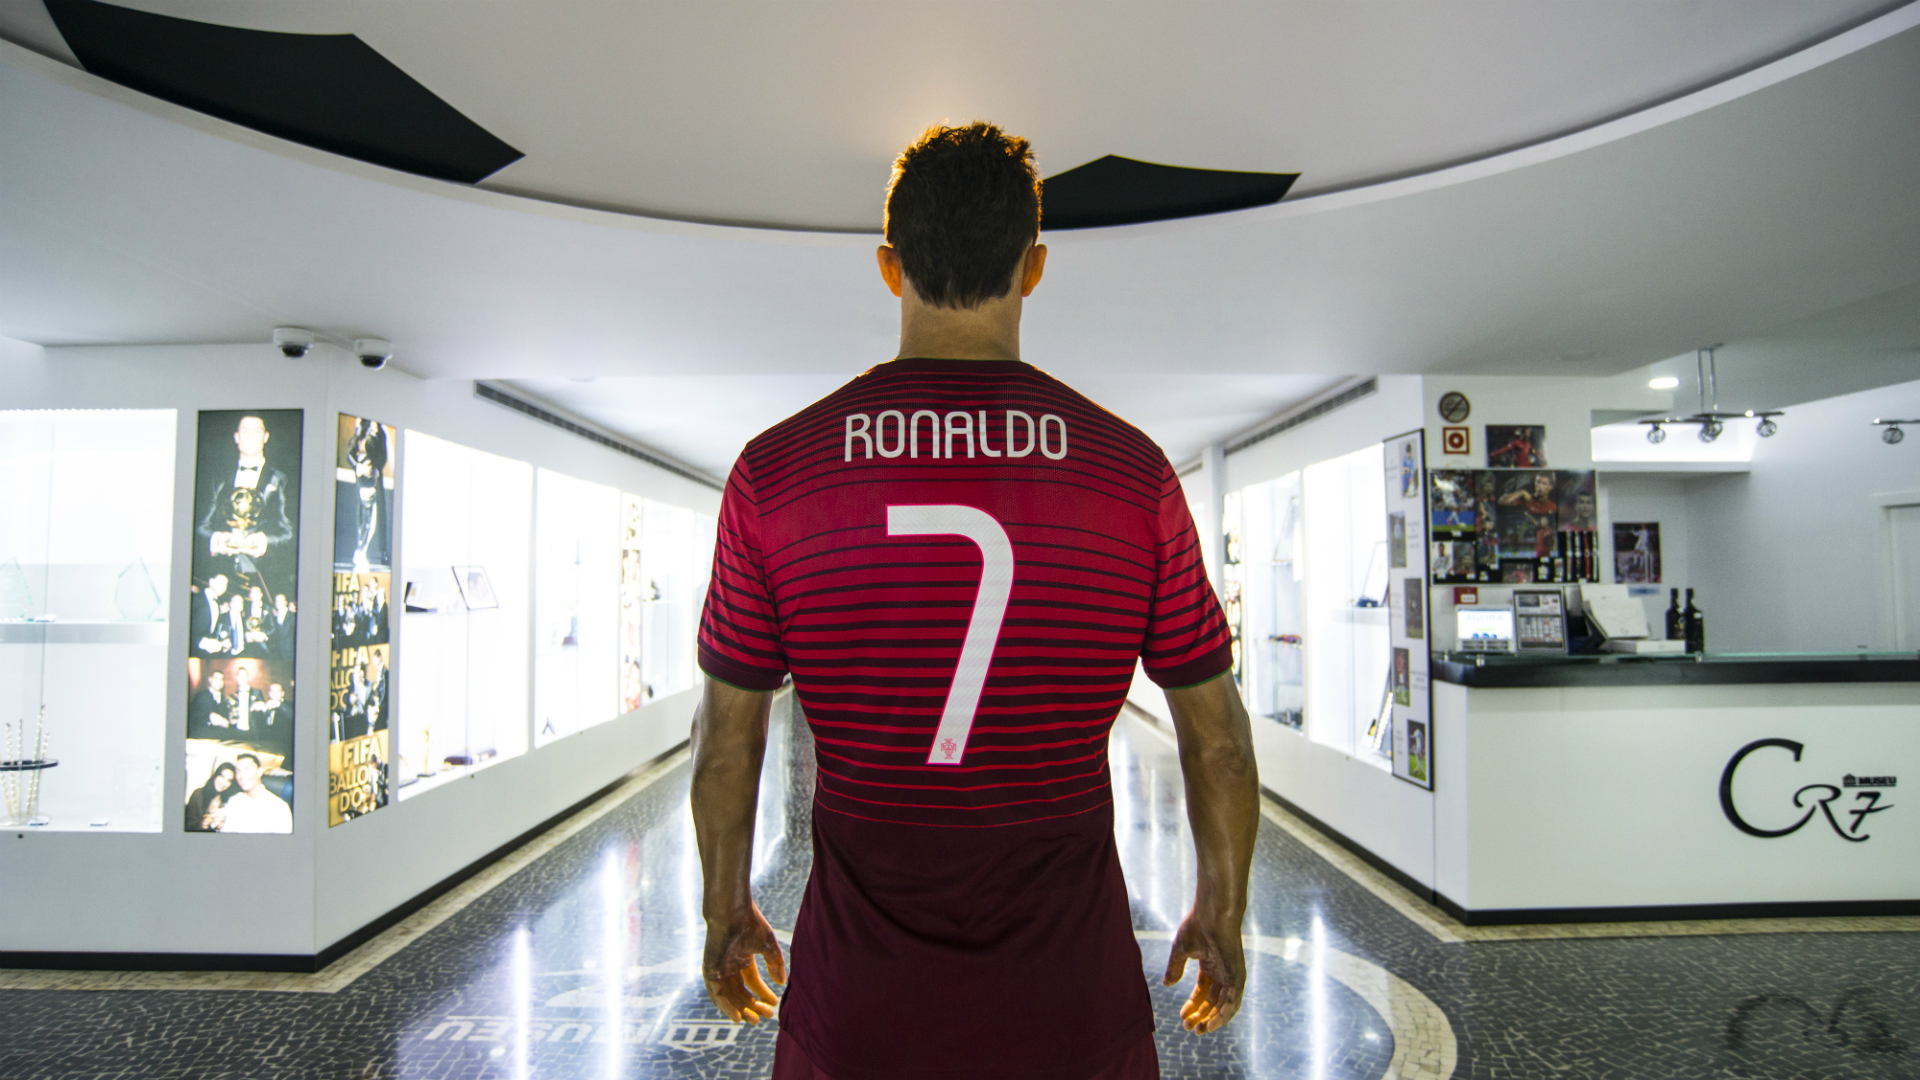 Museo Cristiano Ronaldo - Goal.com1920 x 1080